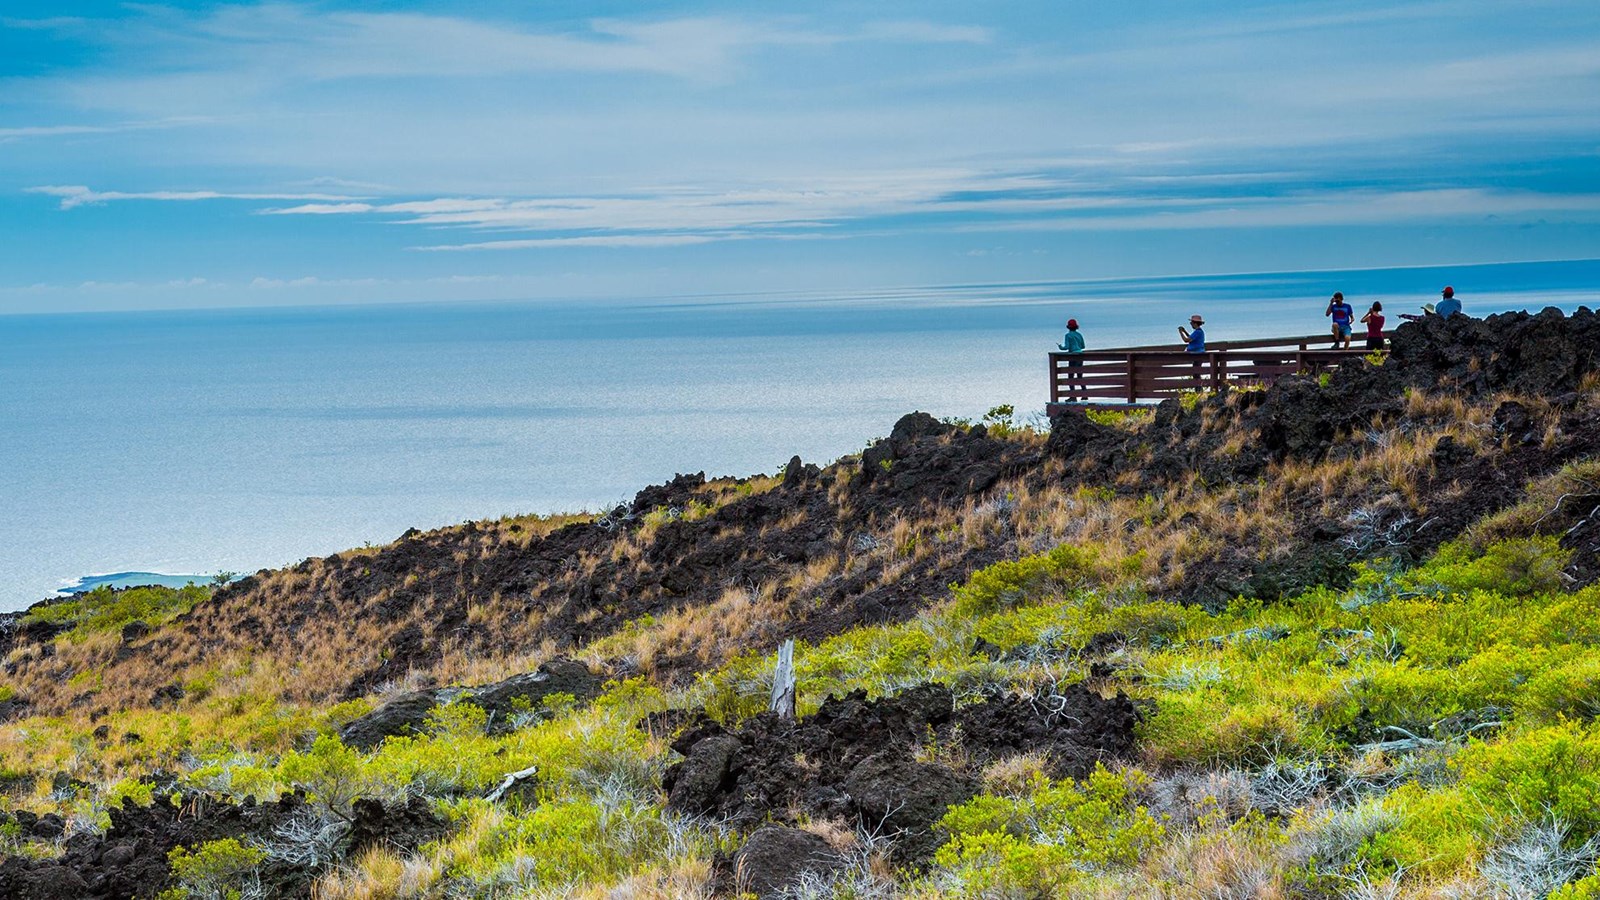 Wooden overlook platform on a hill overlooking the ocean